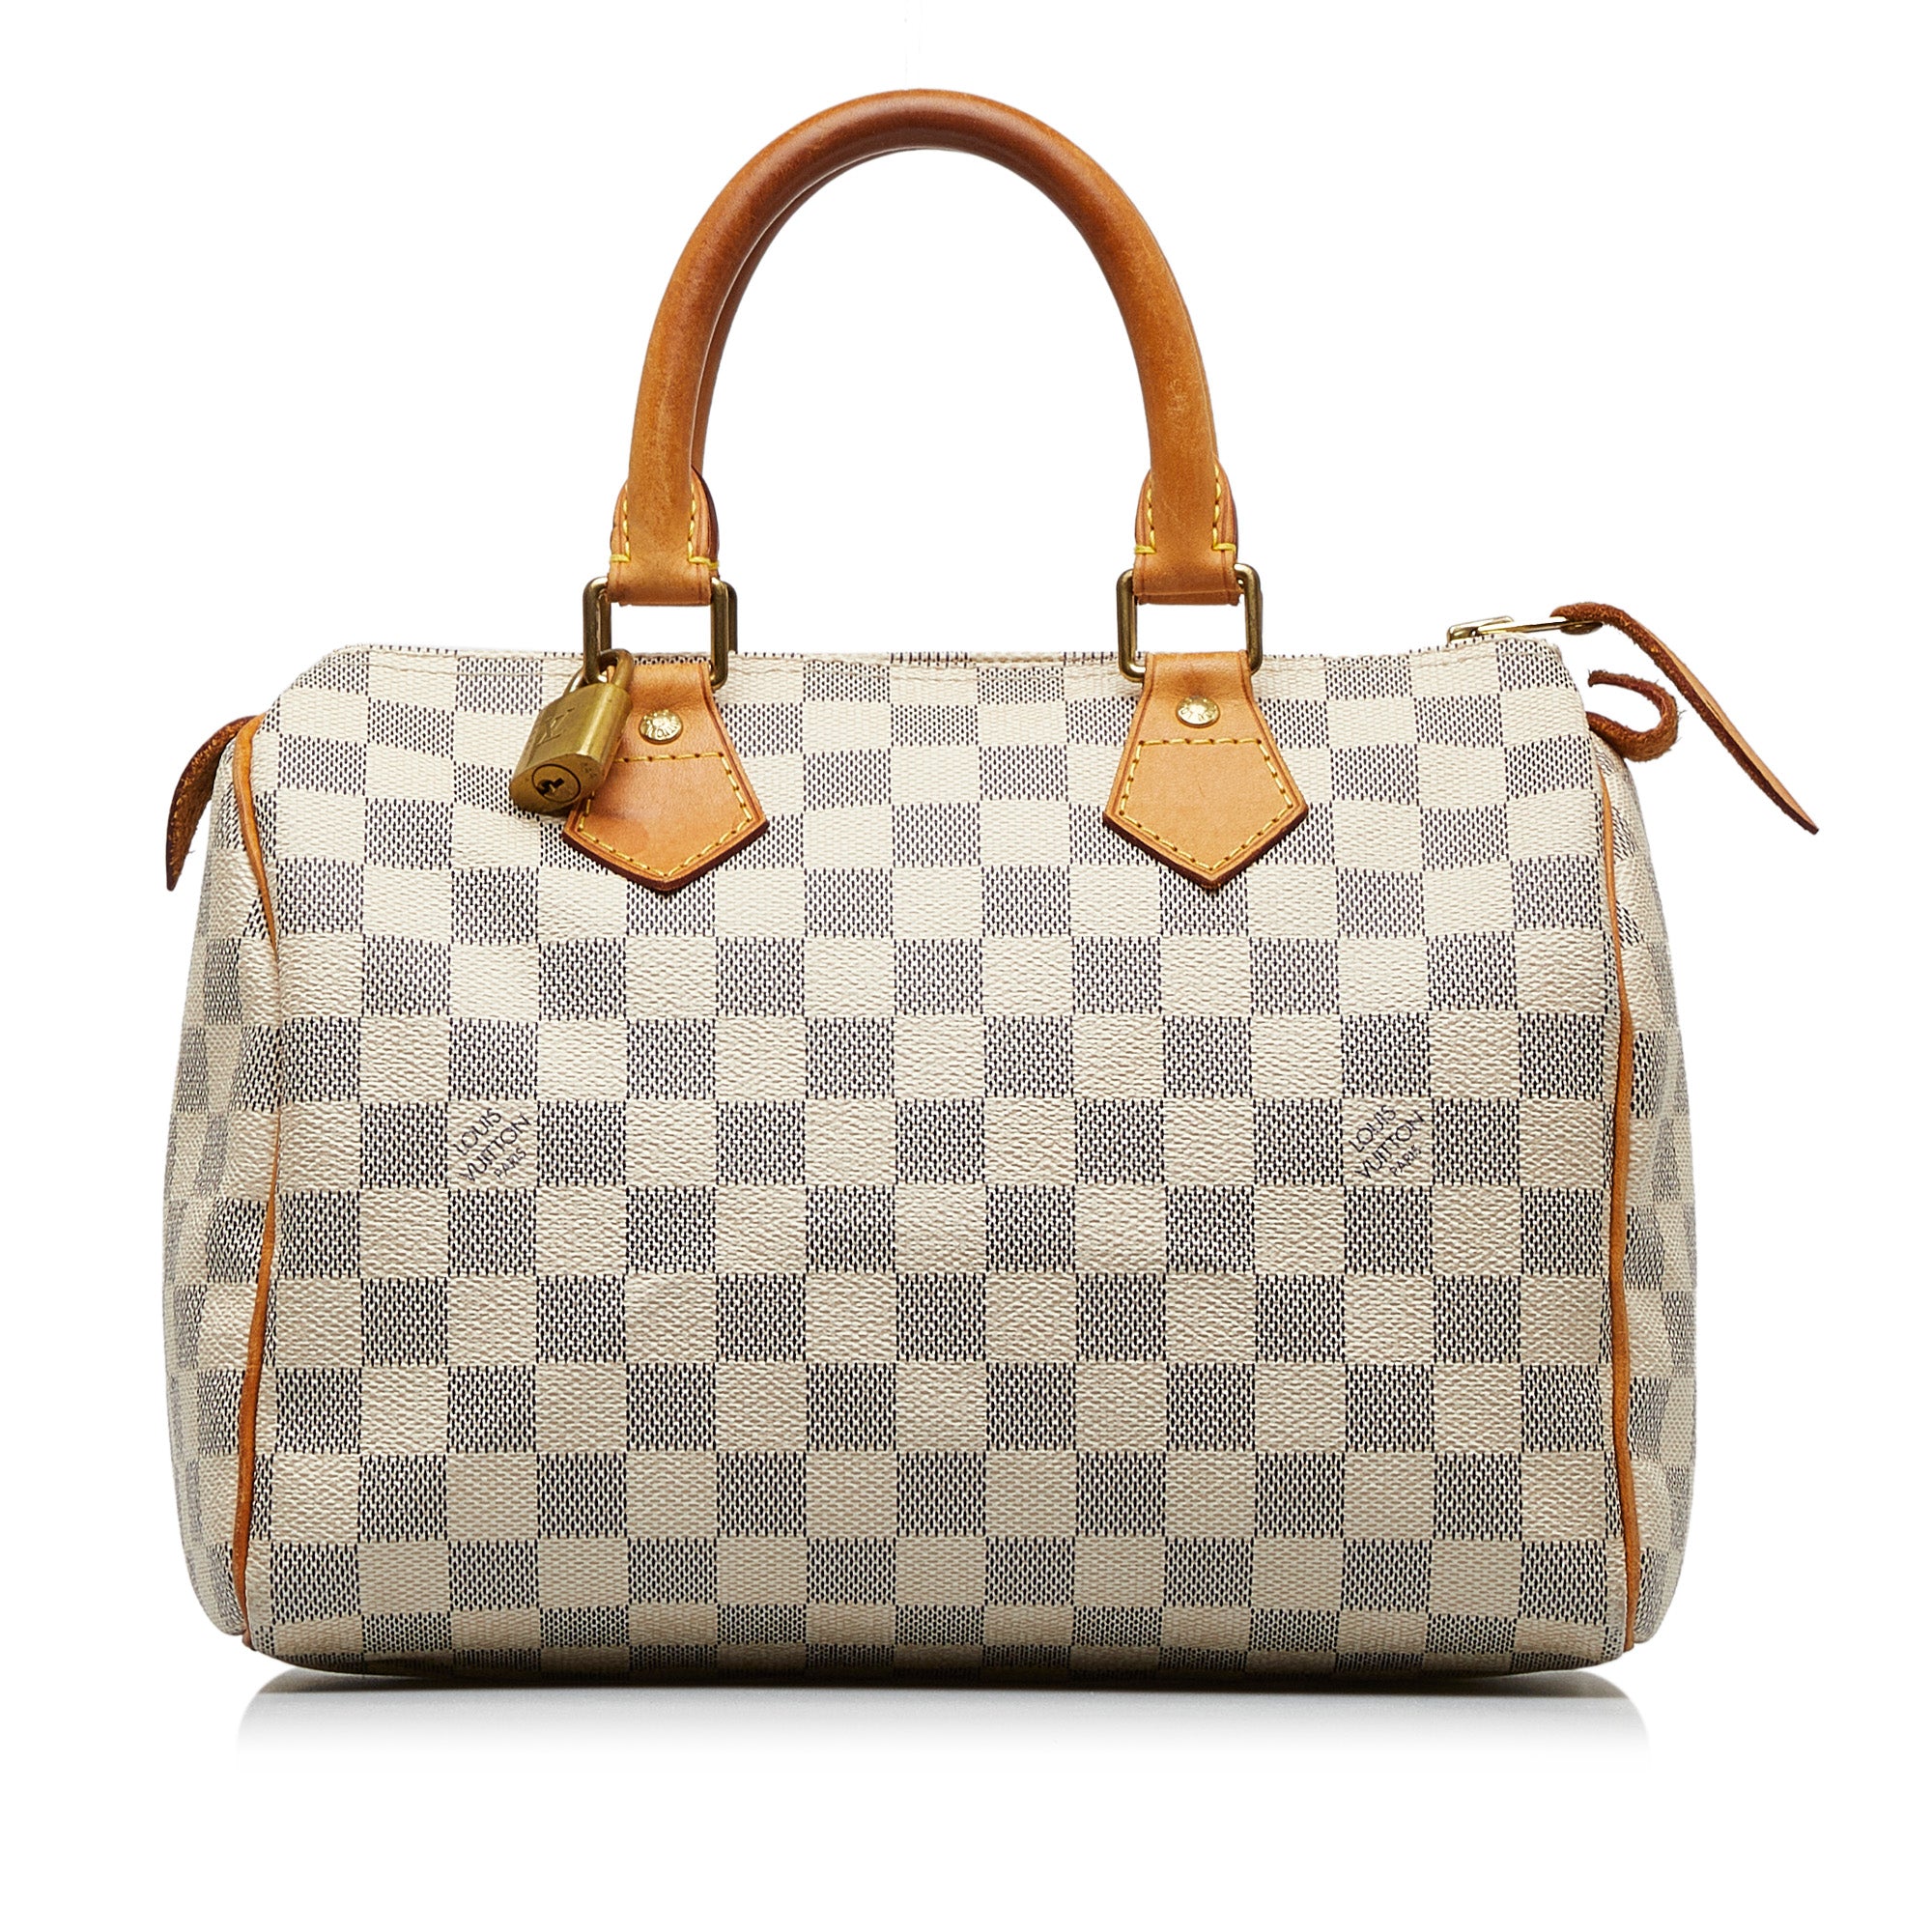 White Louis Vuitton Damier Azur Speedy 30 Boston Bag